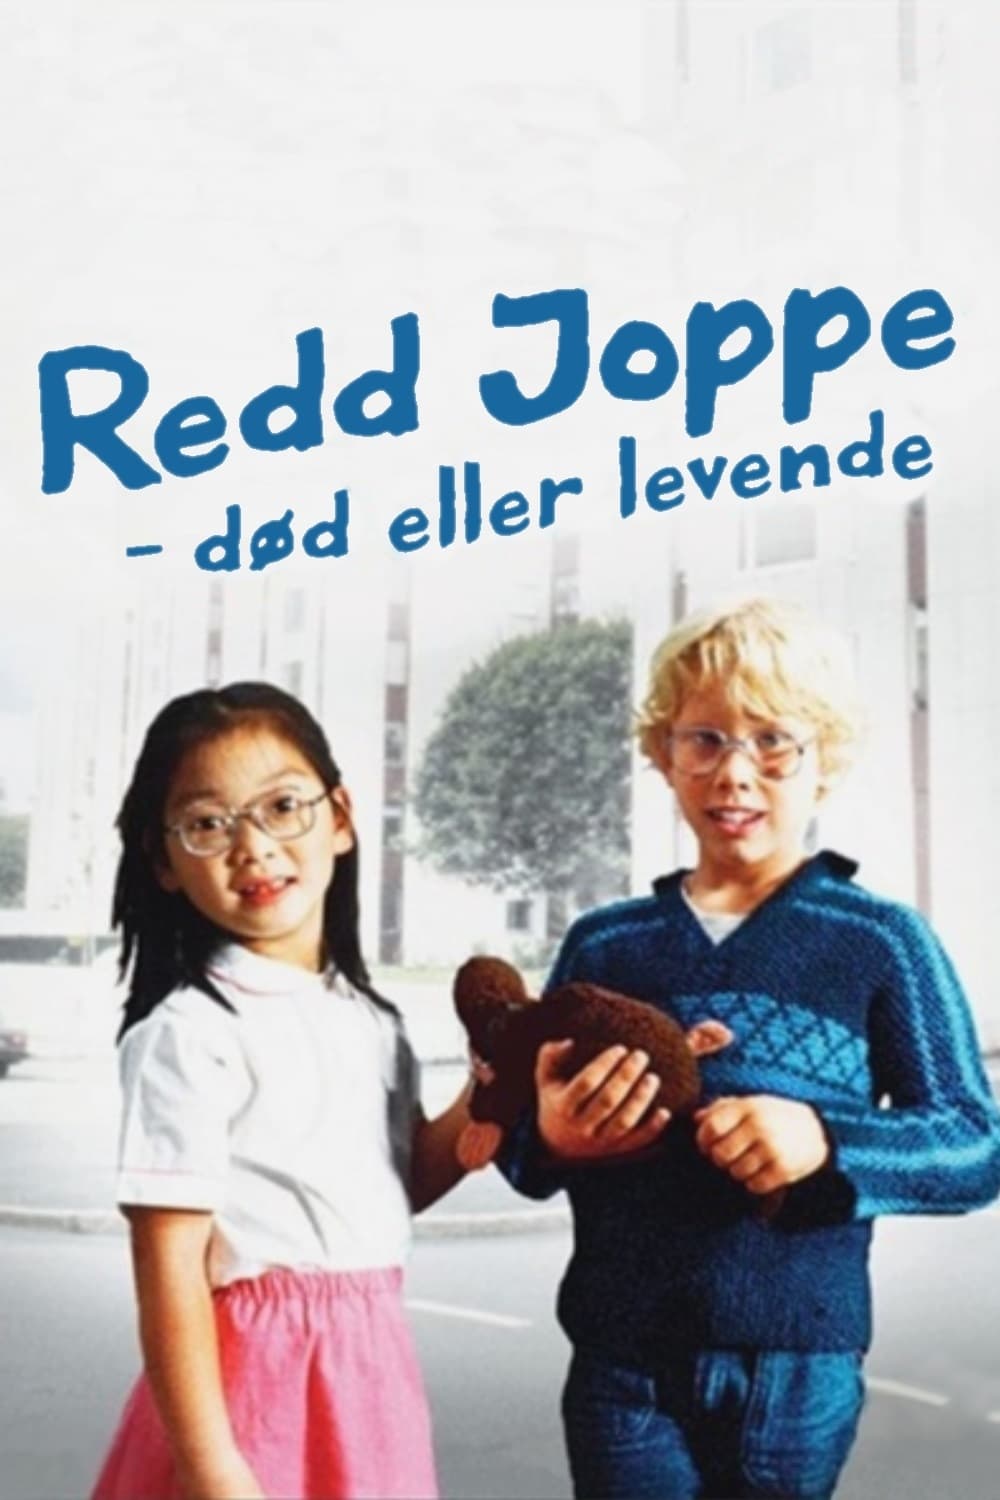 Redd Joppe, død eller levende (1985)